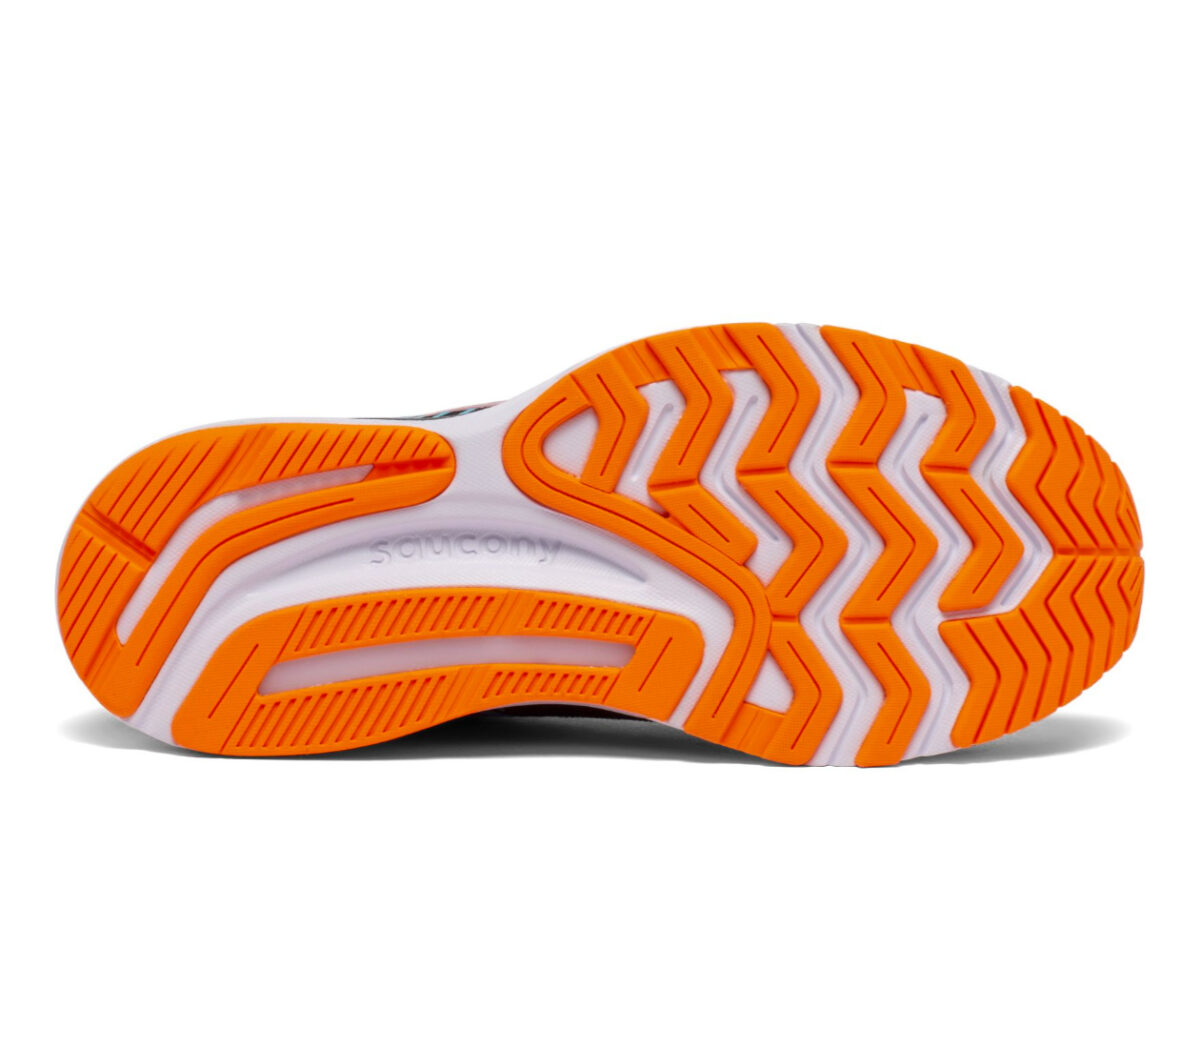 suola scarpa stabile per pronazione saucony guide 14 donna nera e arancio